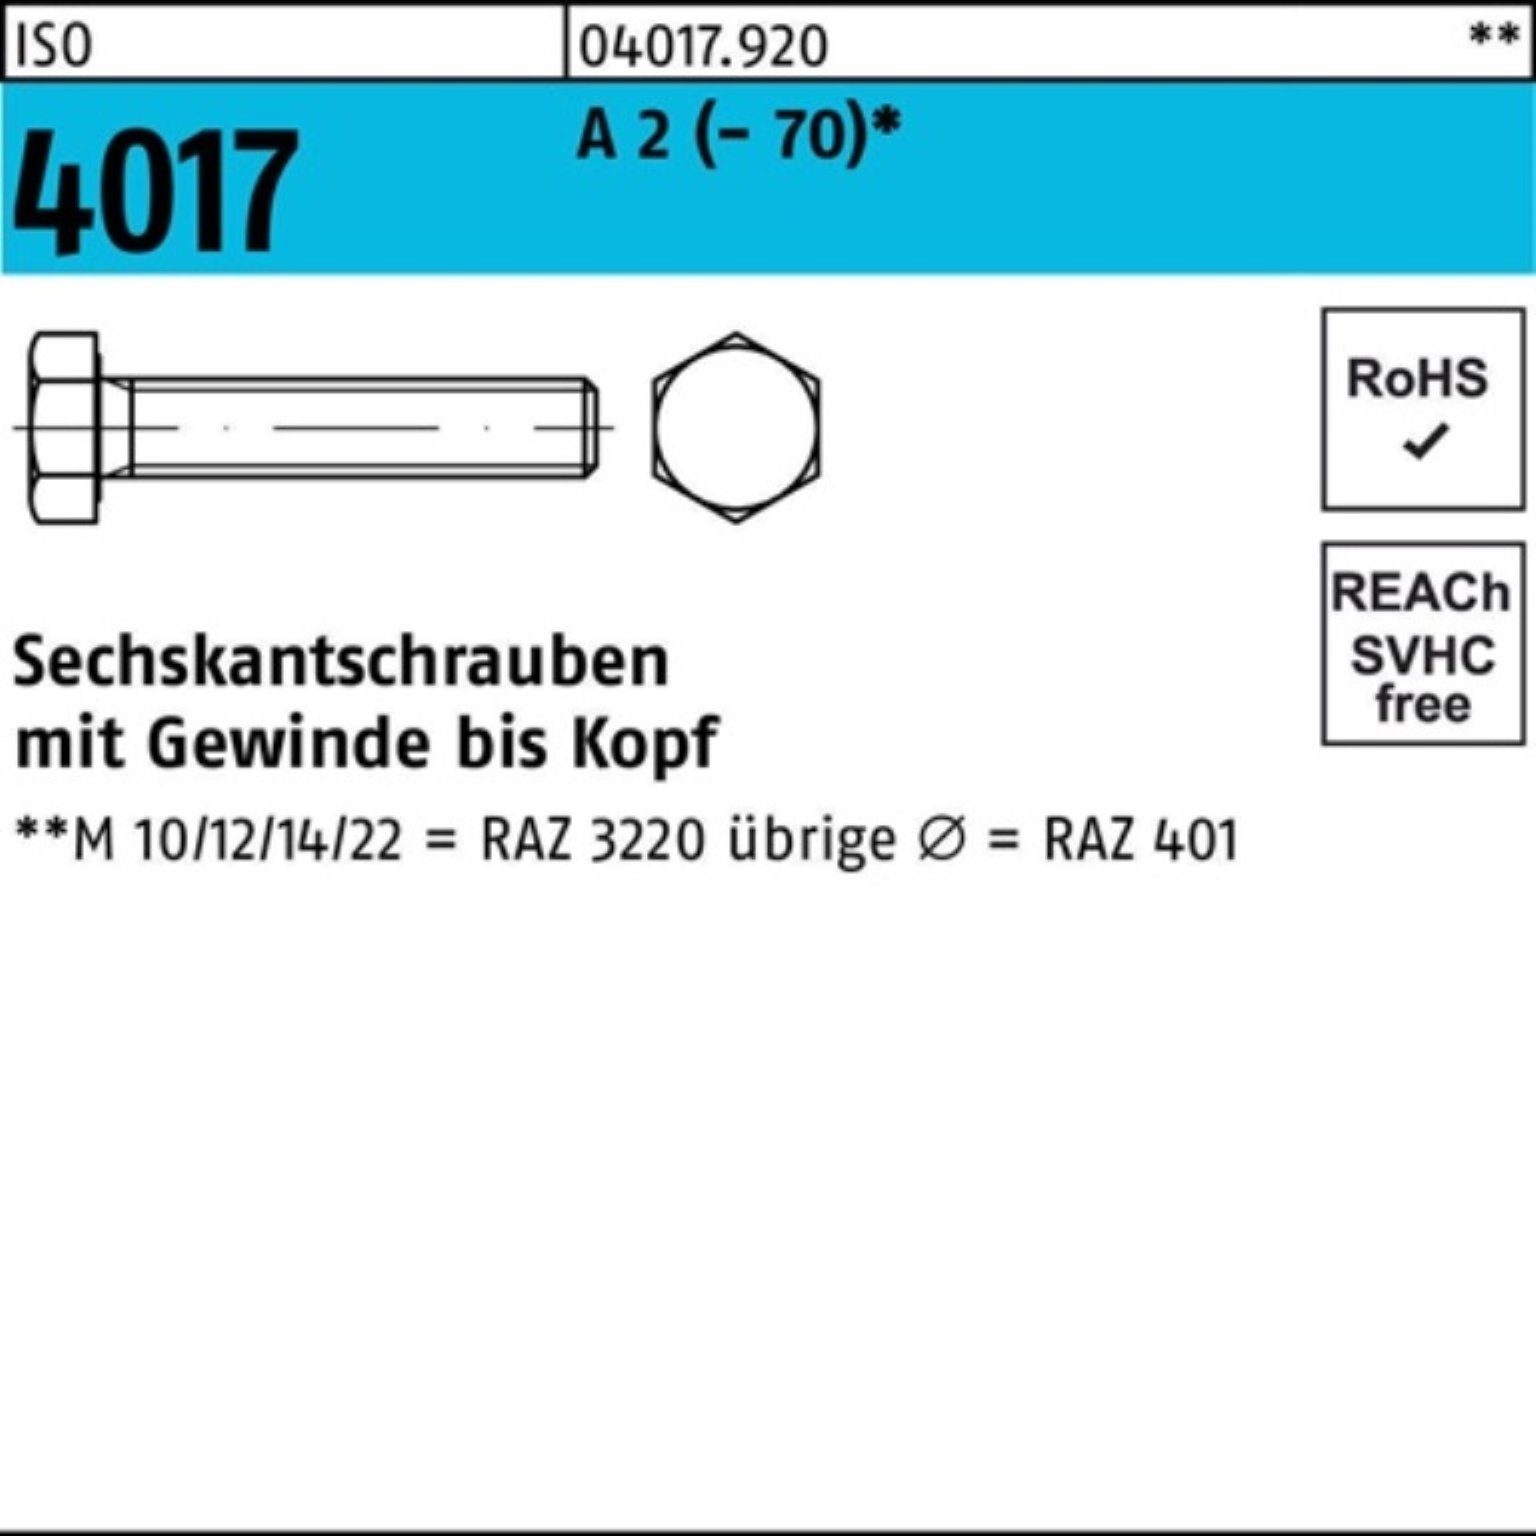 Bufab Sechskantschraube 100er Pack Sechskantschraube ISO 4017 VG M6x 12 A 2 (70) 100 Stück